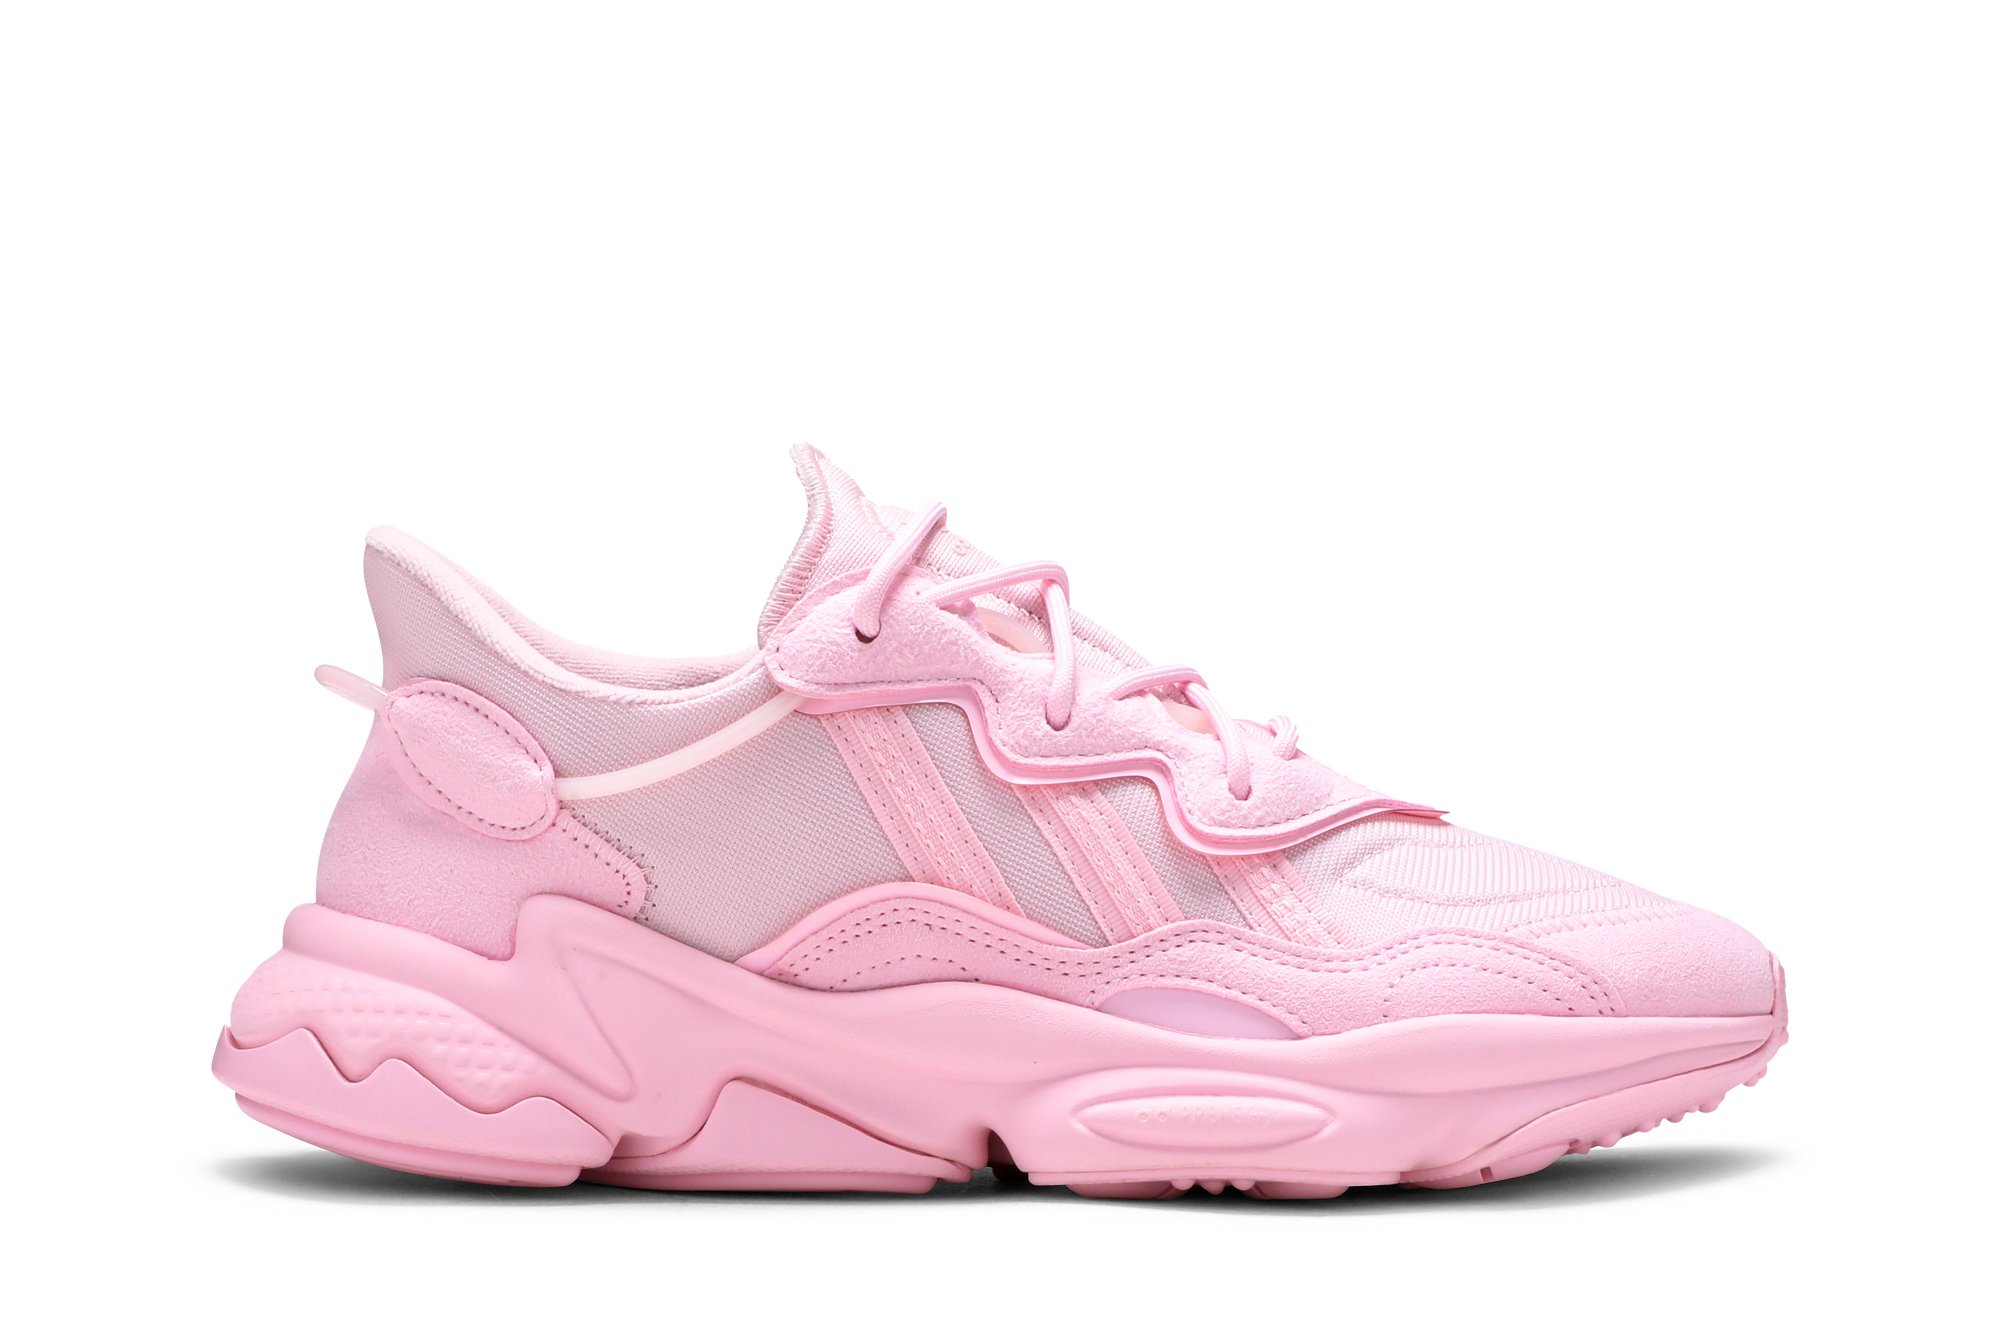 adidas Ozweego White Sky Tint Pink (Women's)